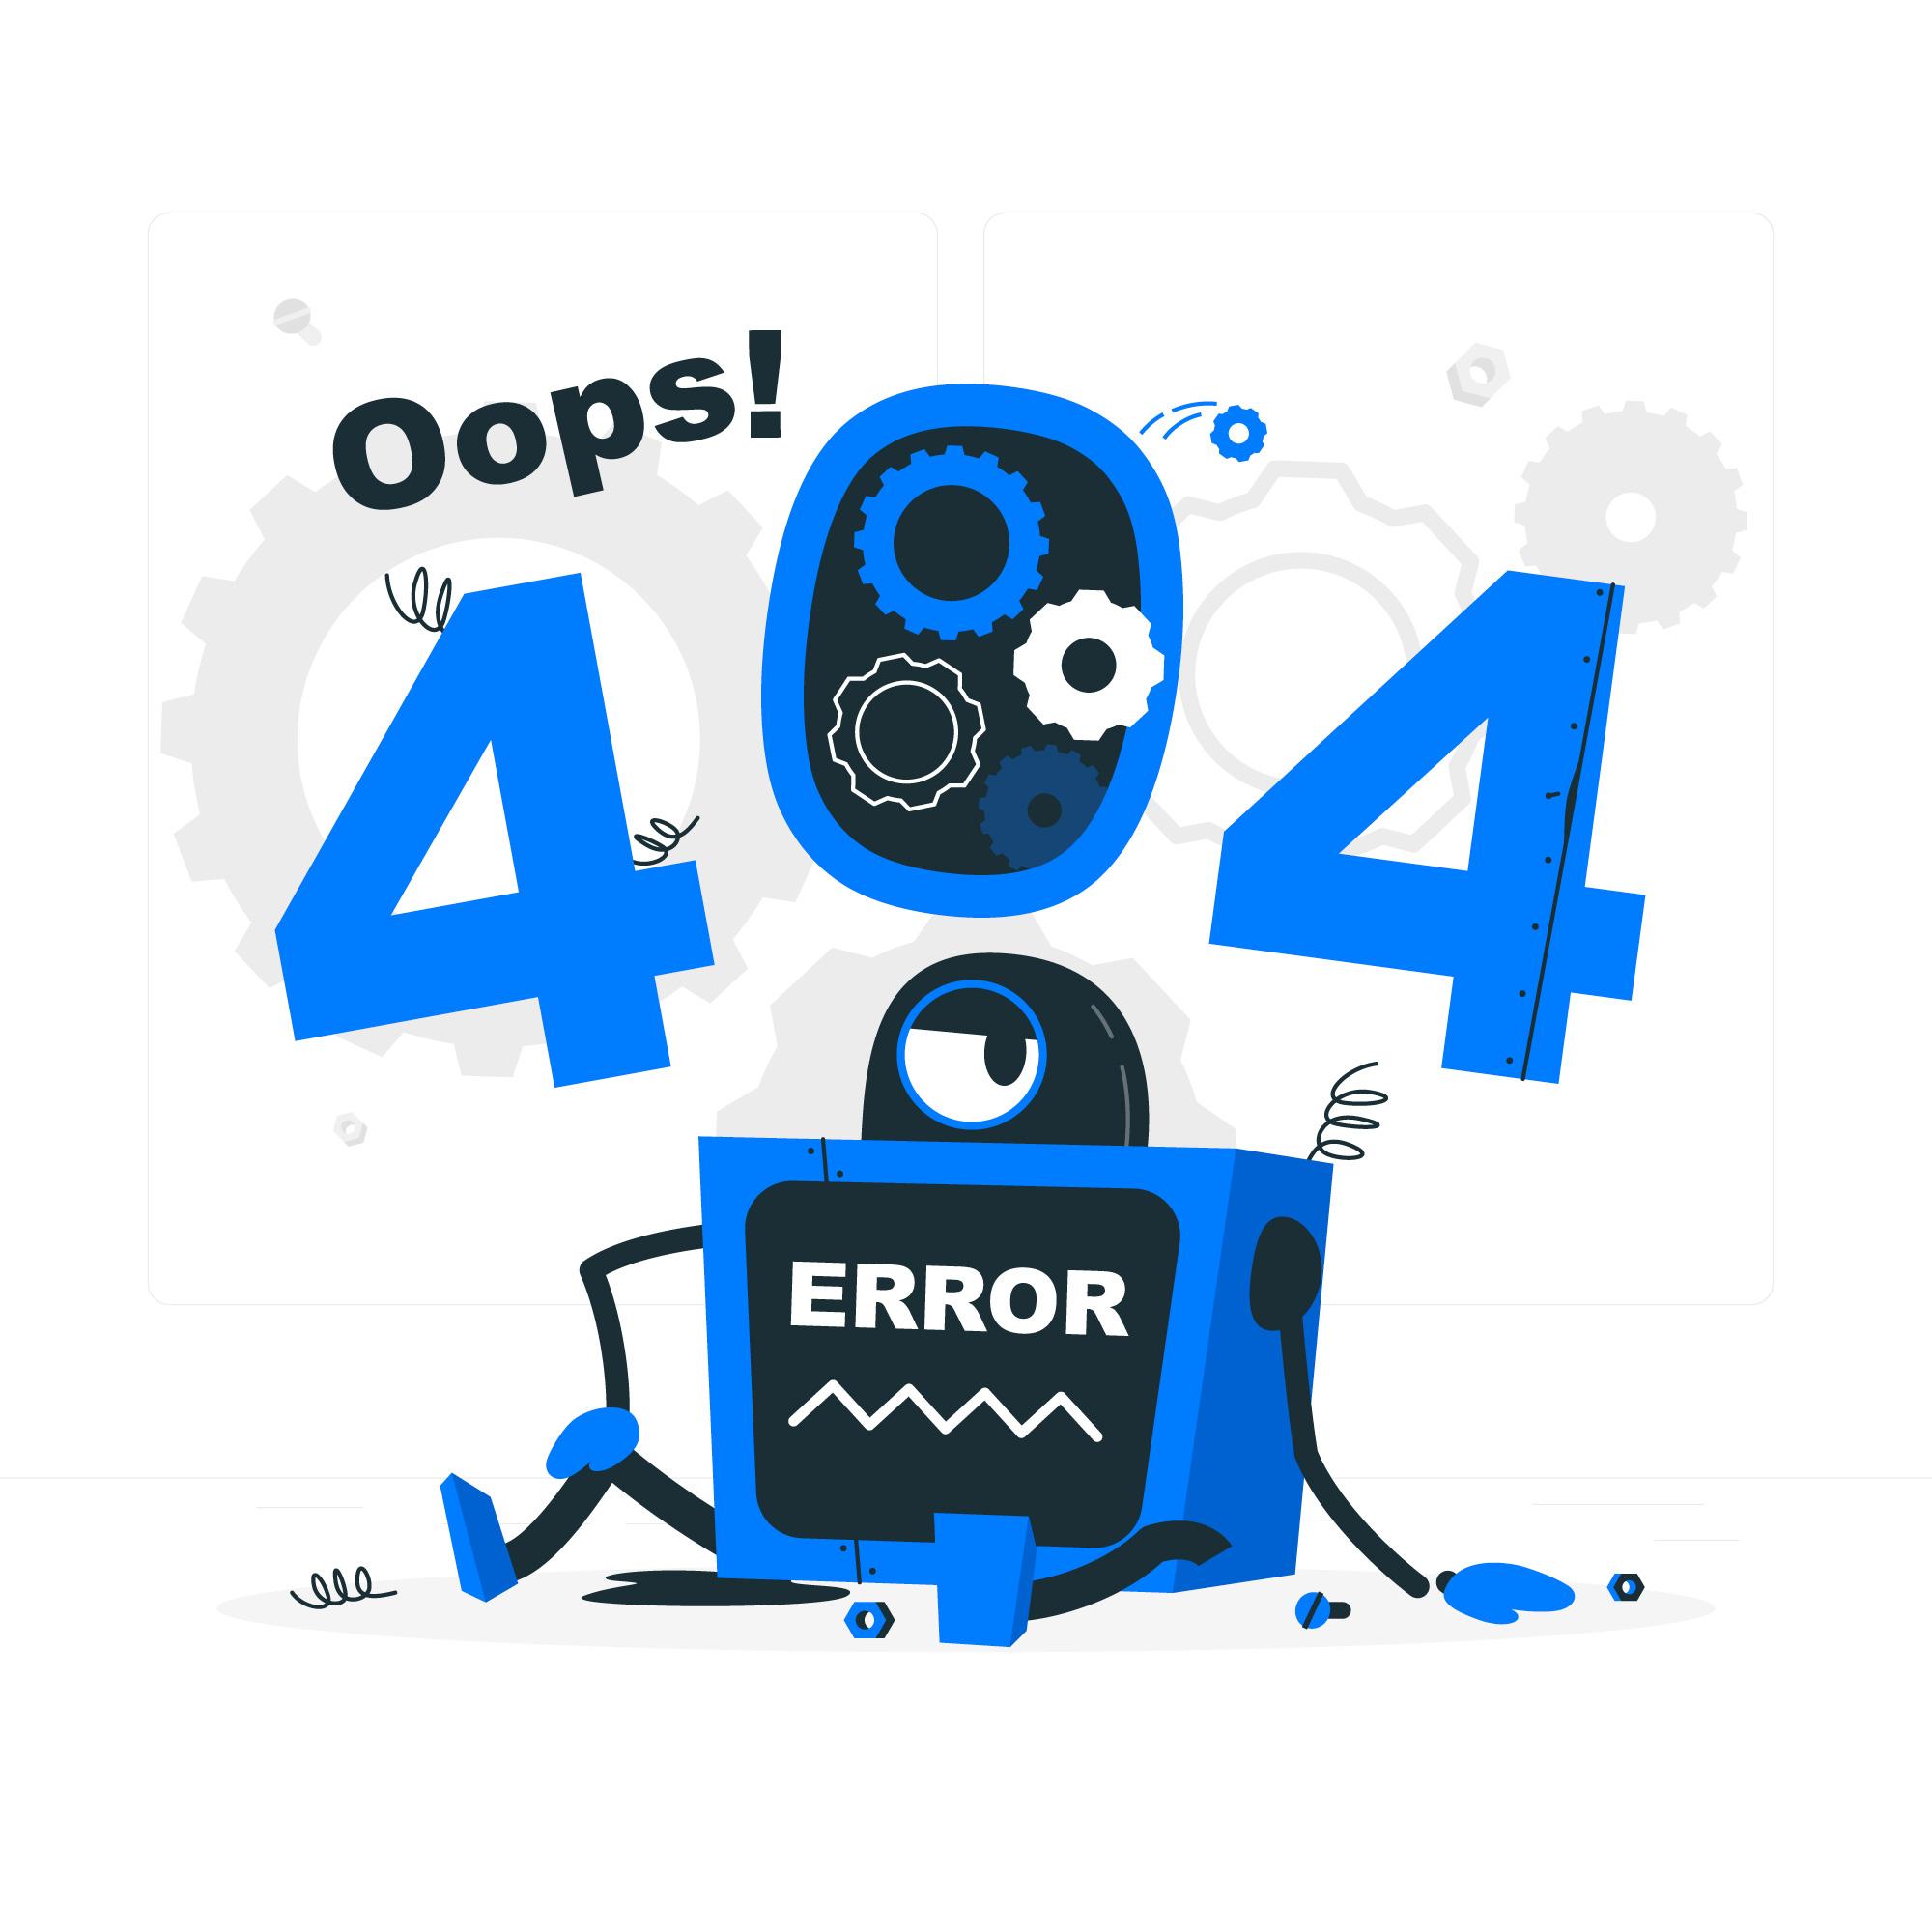 همراه وردپرس : اپلیکیشن فروشگاهی ووکامرس برای اندروید و آی او اس - 404